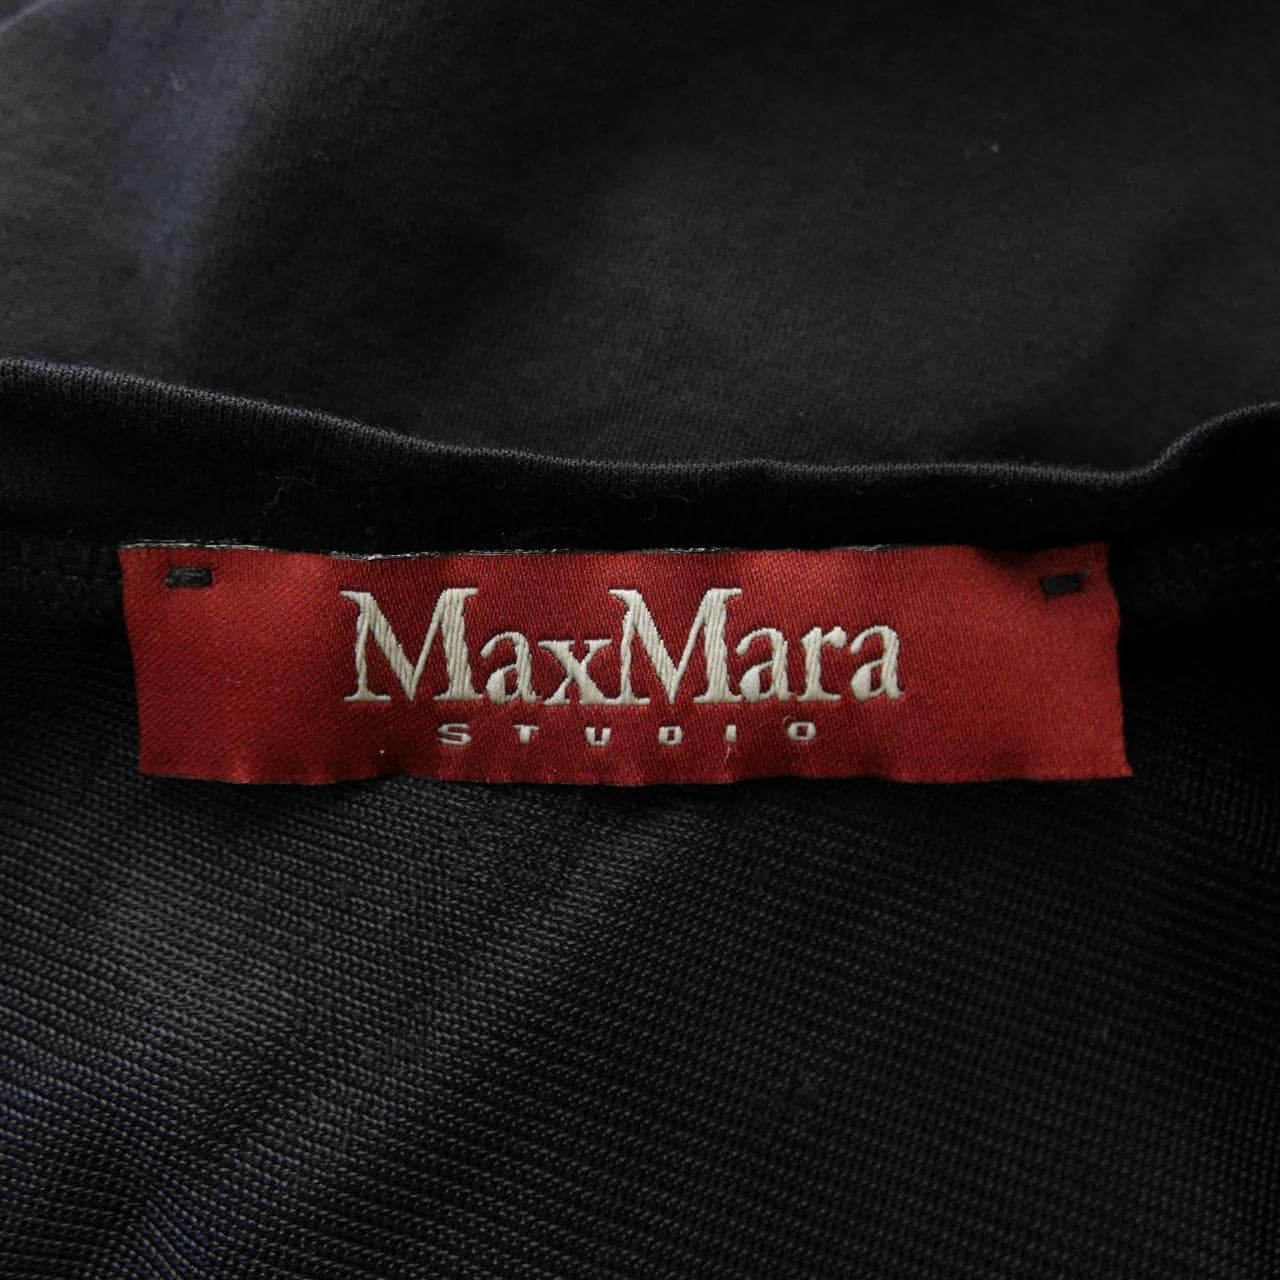 Max Mara STUDIO Mara STUDIO Tops